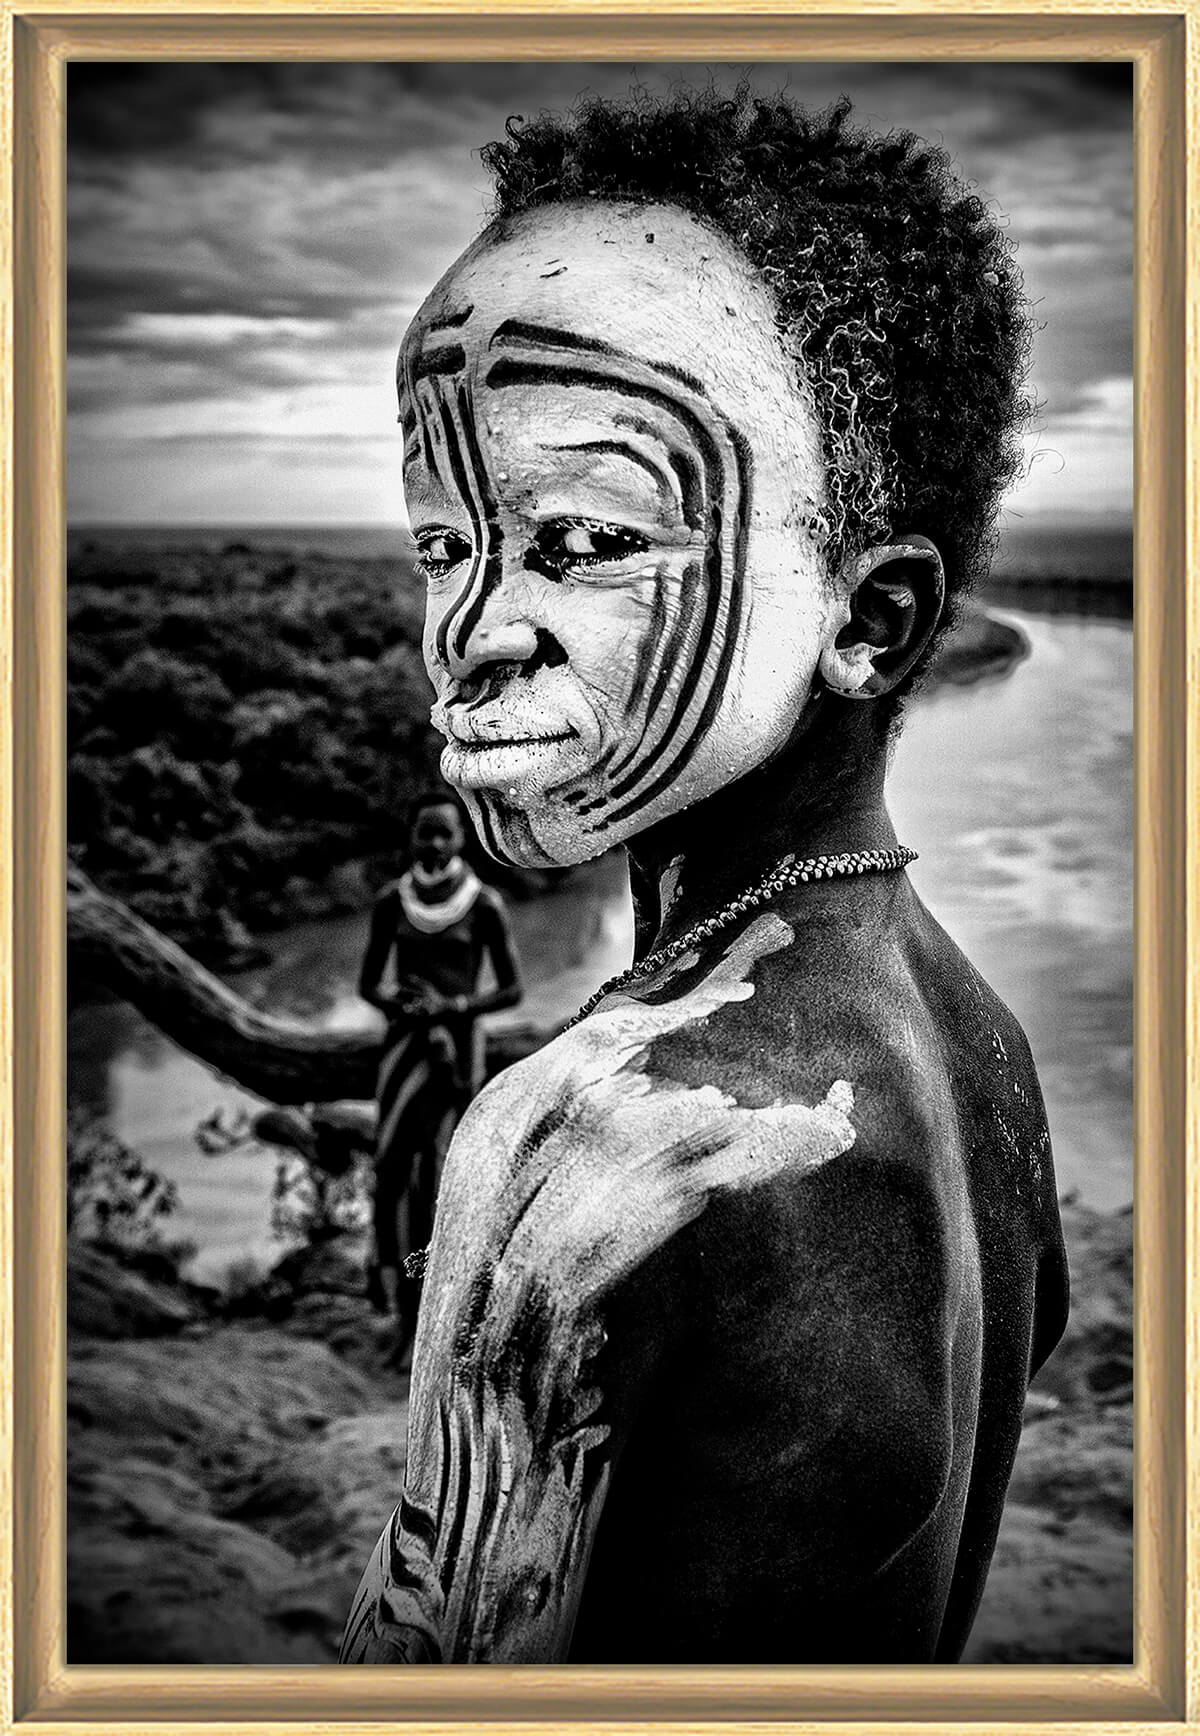 A boy of the Karo tribe, tirage encadré sur verre synthétique 40x60 cm